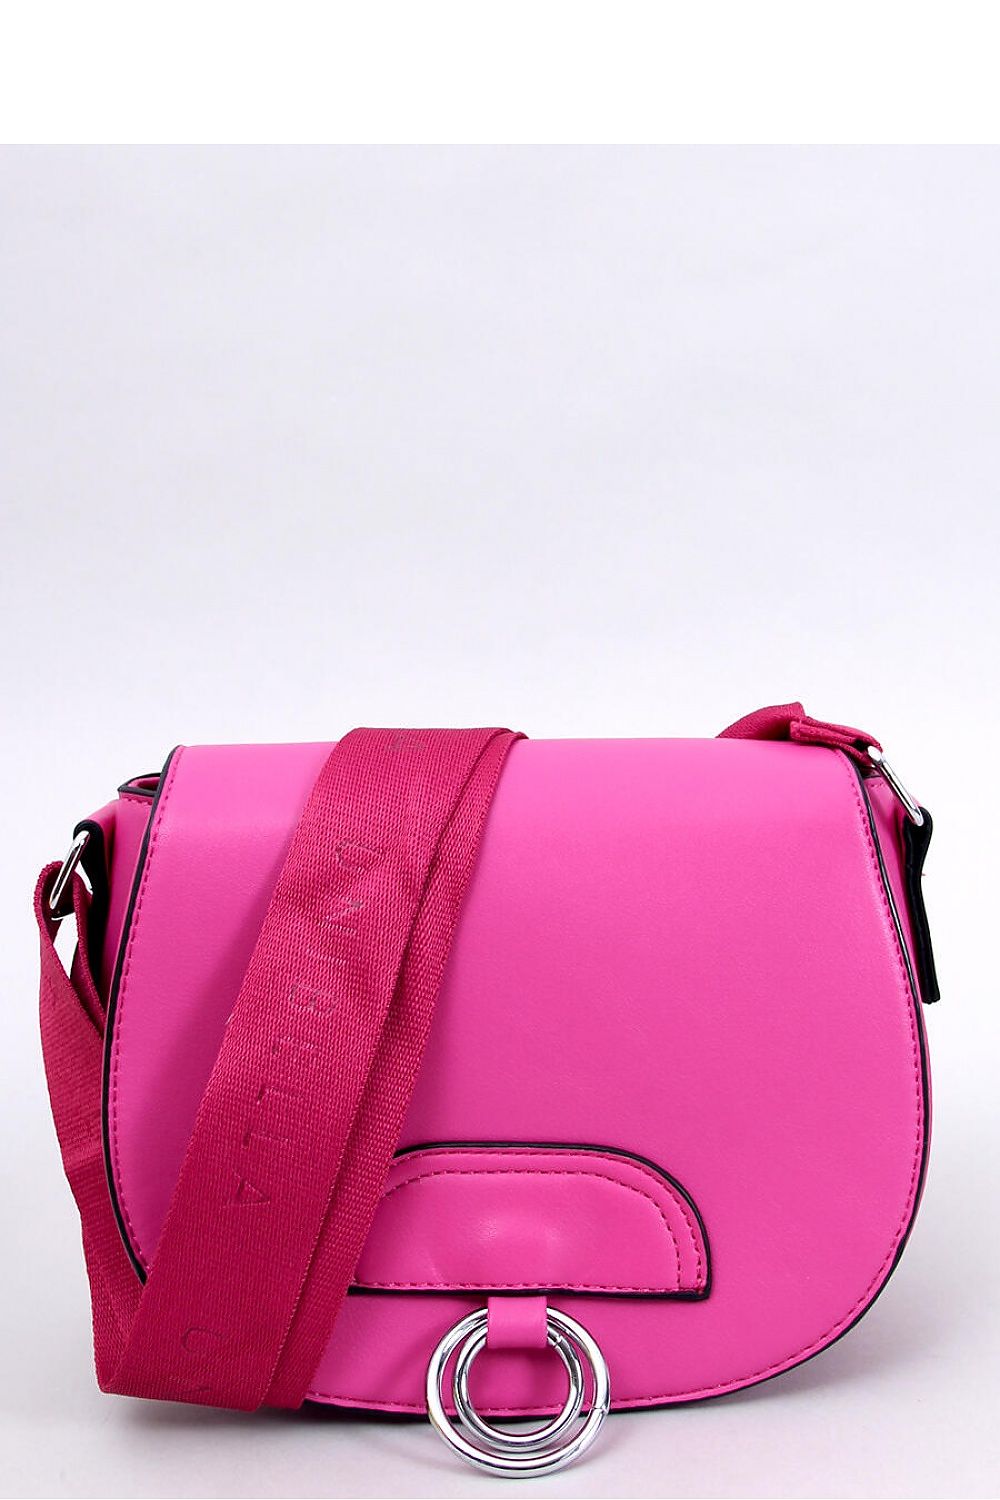 Pink messenger bag with wide adjustable strap